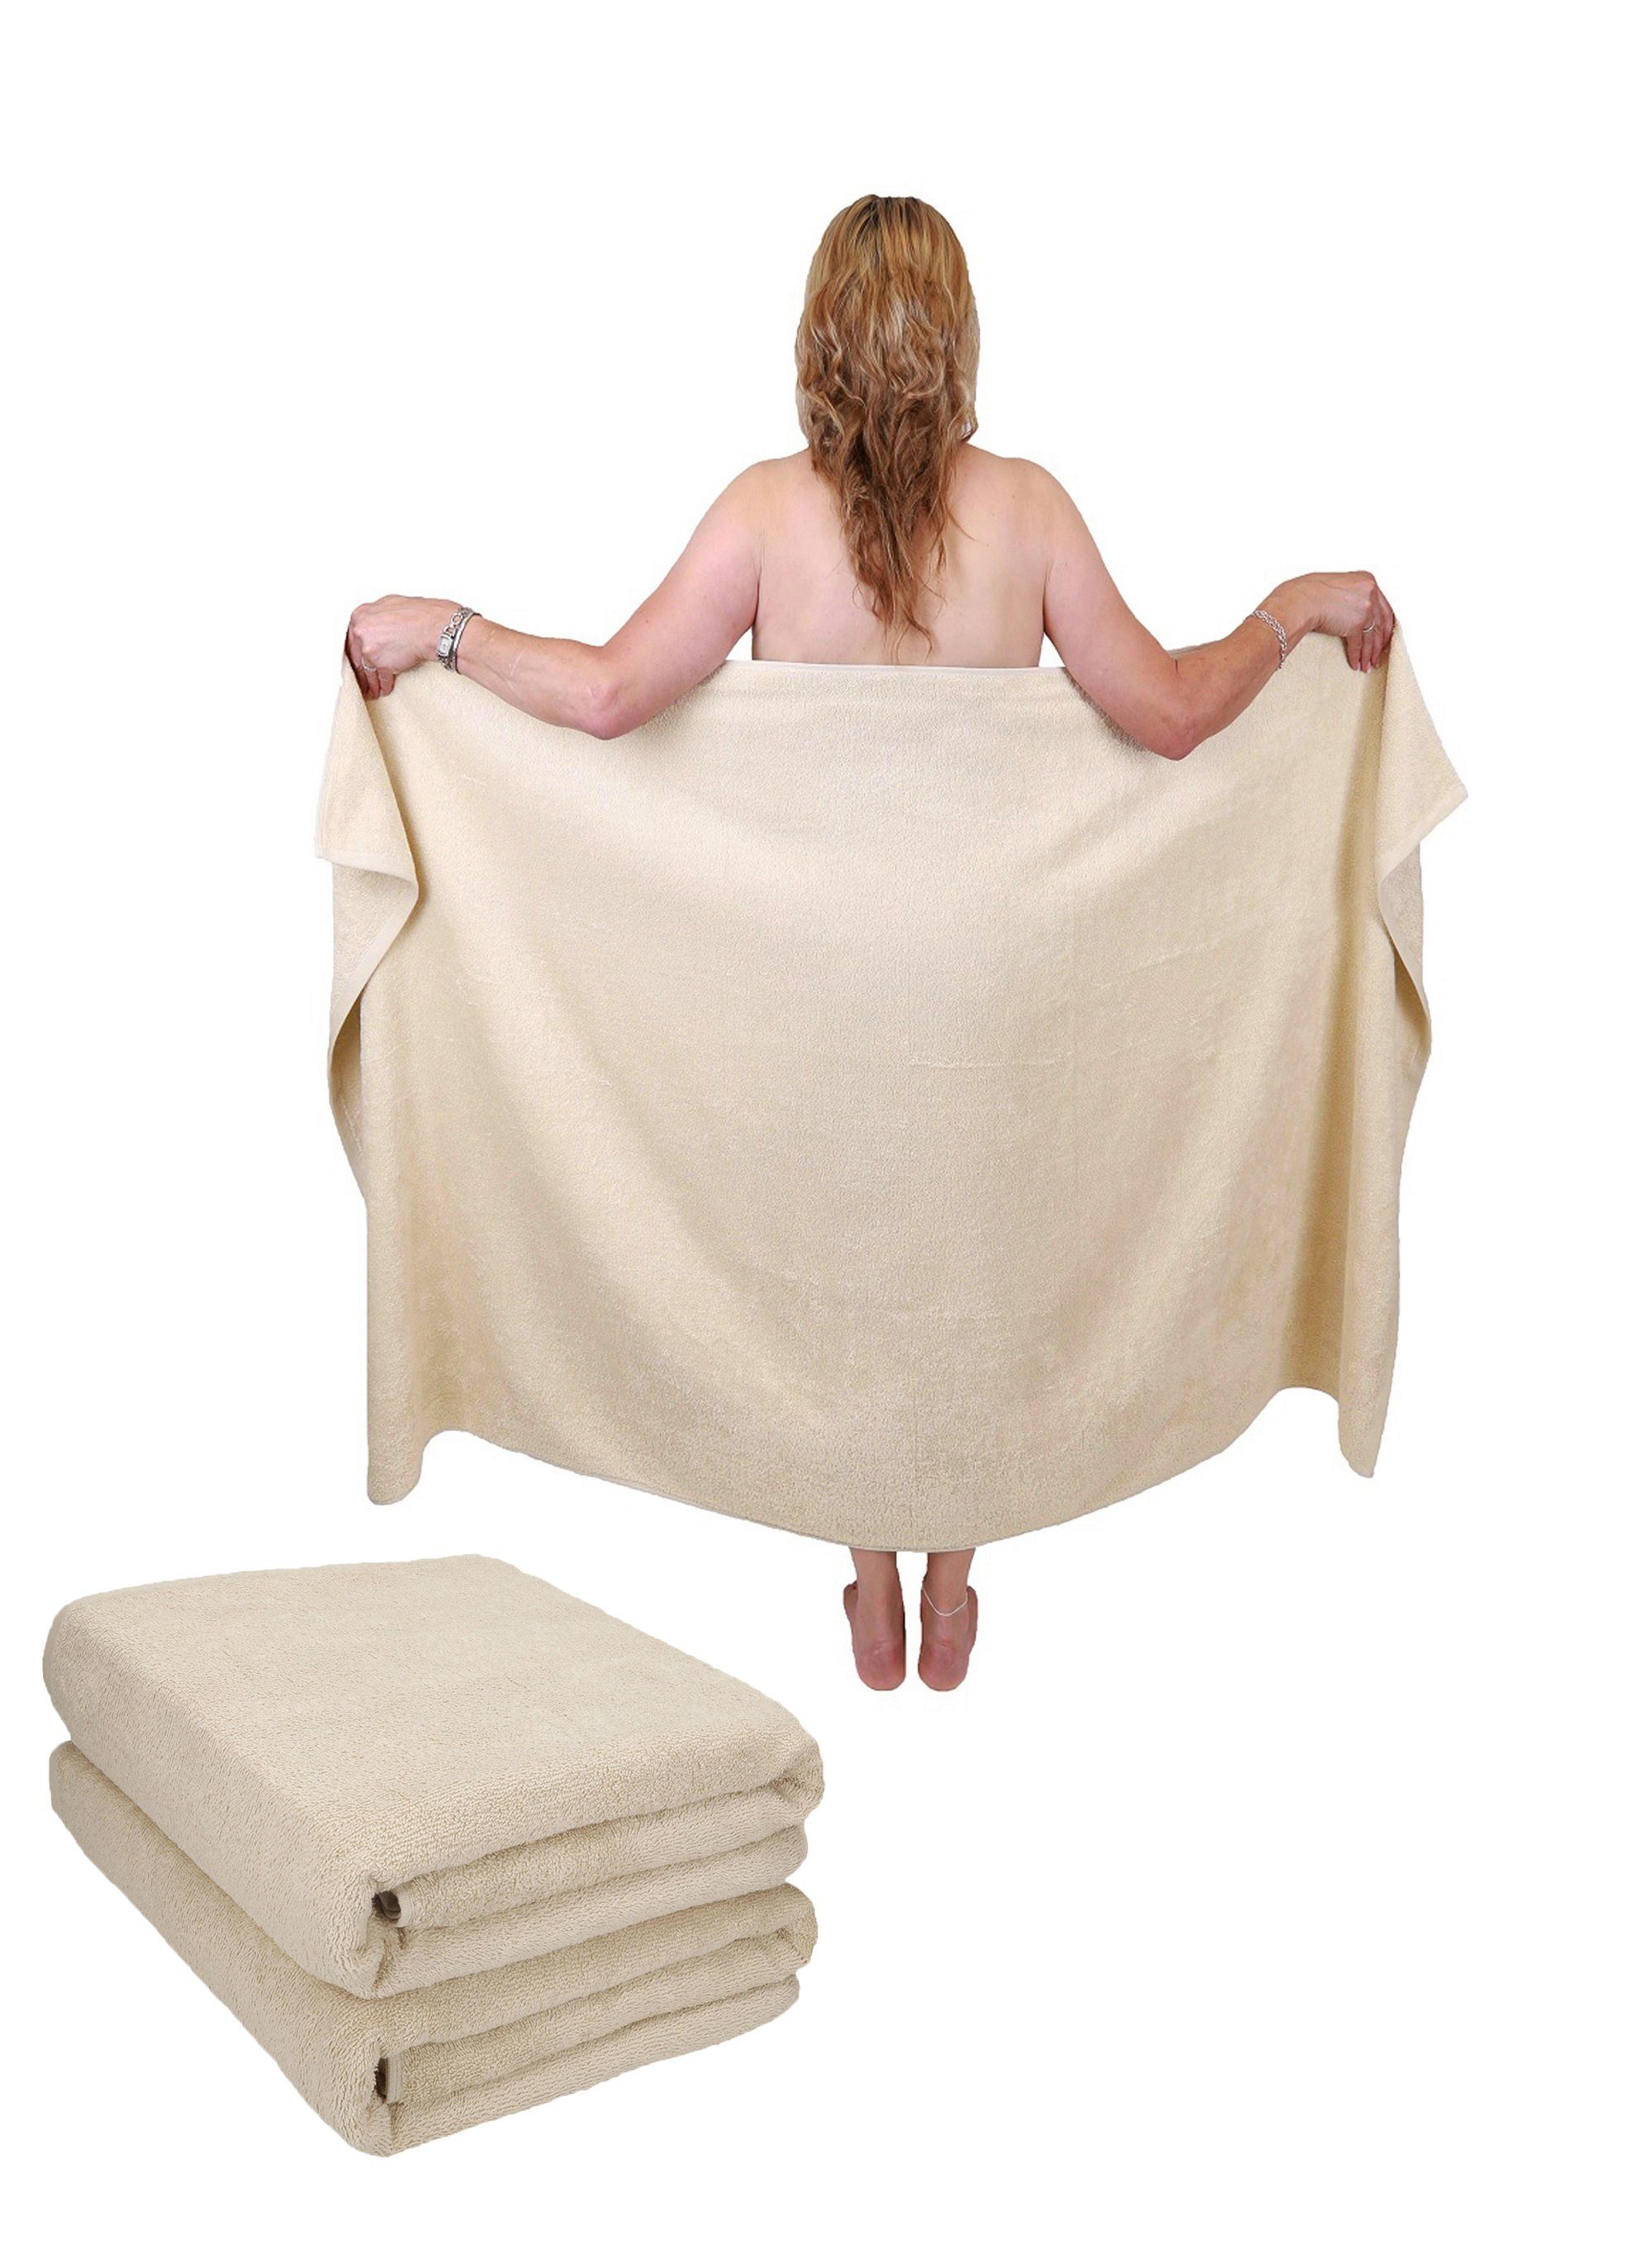 Diebels Duschtuch Handtuch Saunatuch Badetuch 100% Baumwolle NEU 